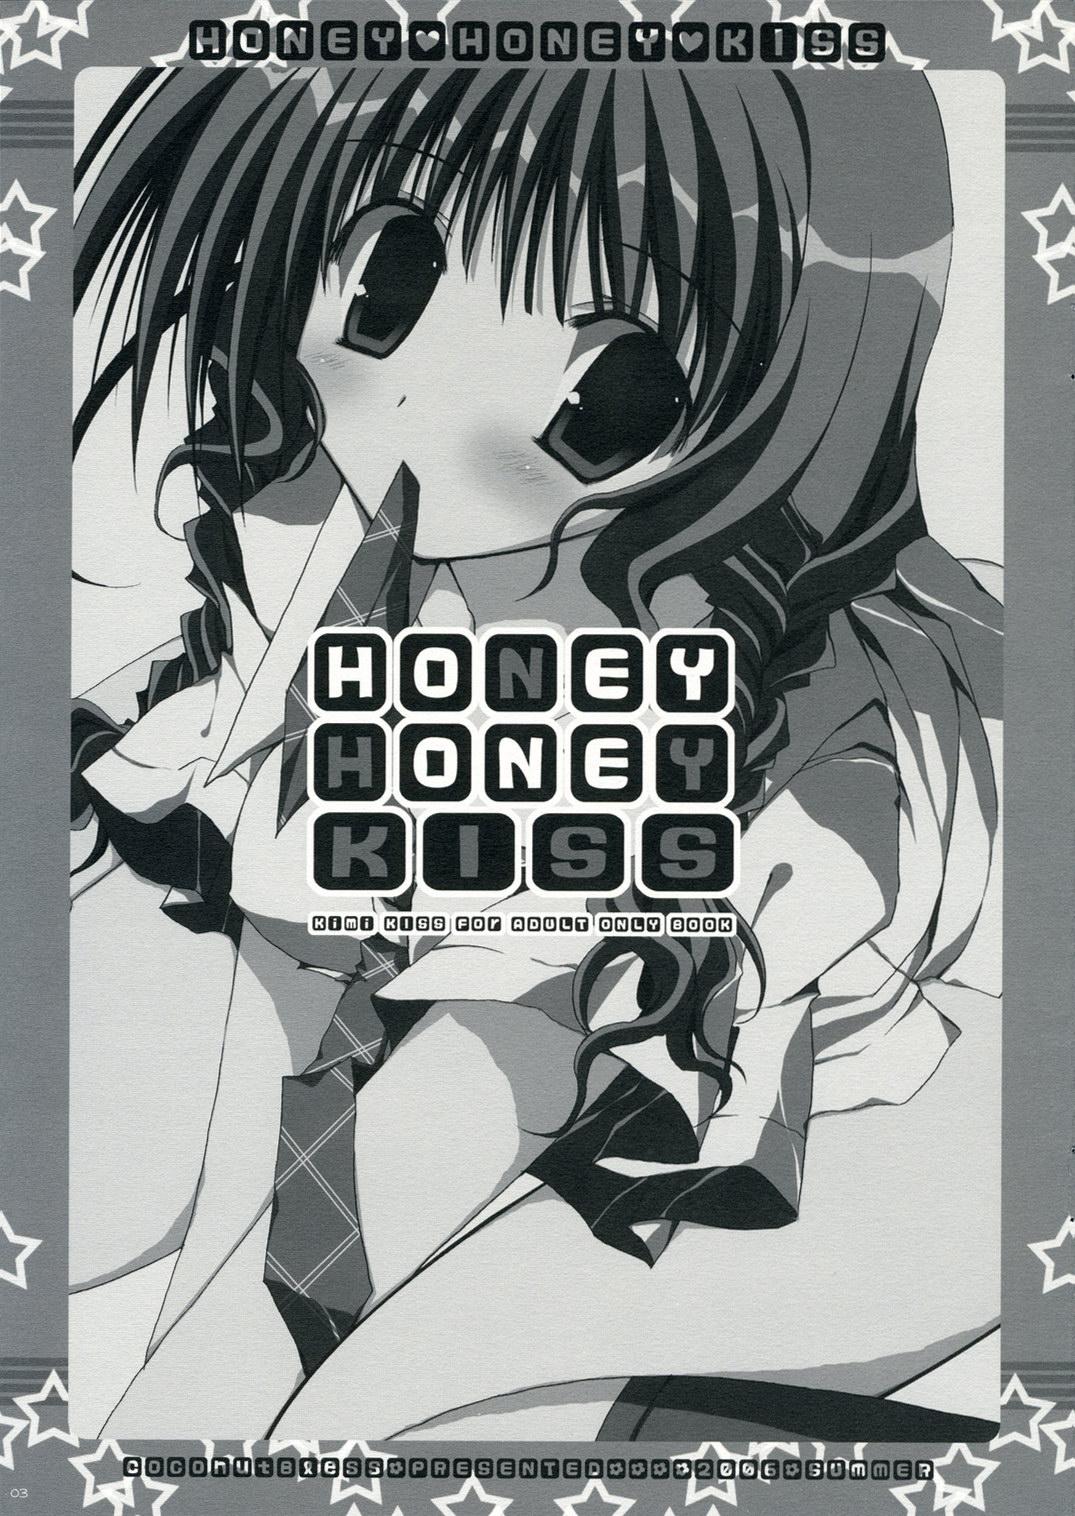 HONEY HONEY KISS 1